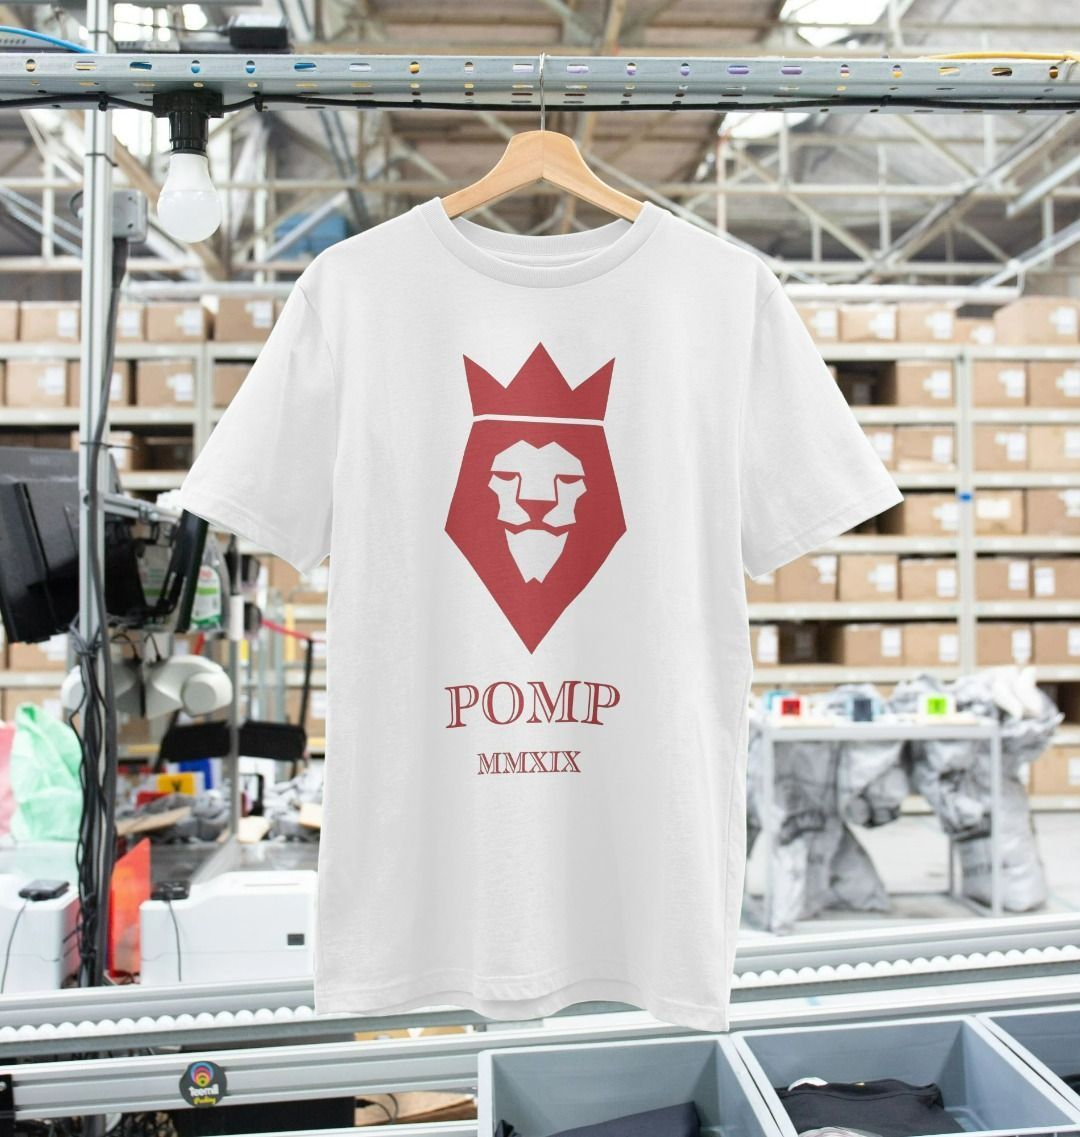 POMP MMXIX t-shirt